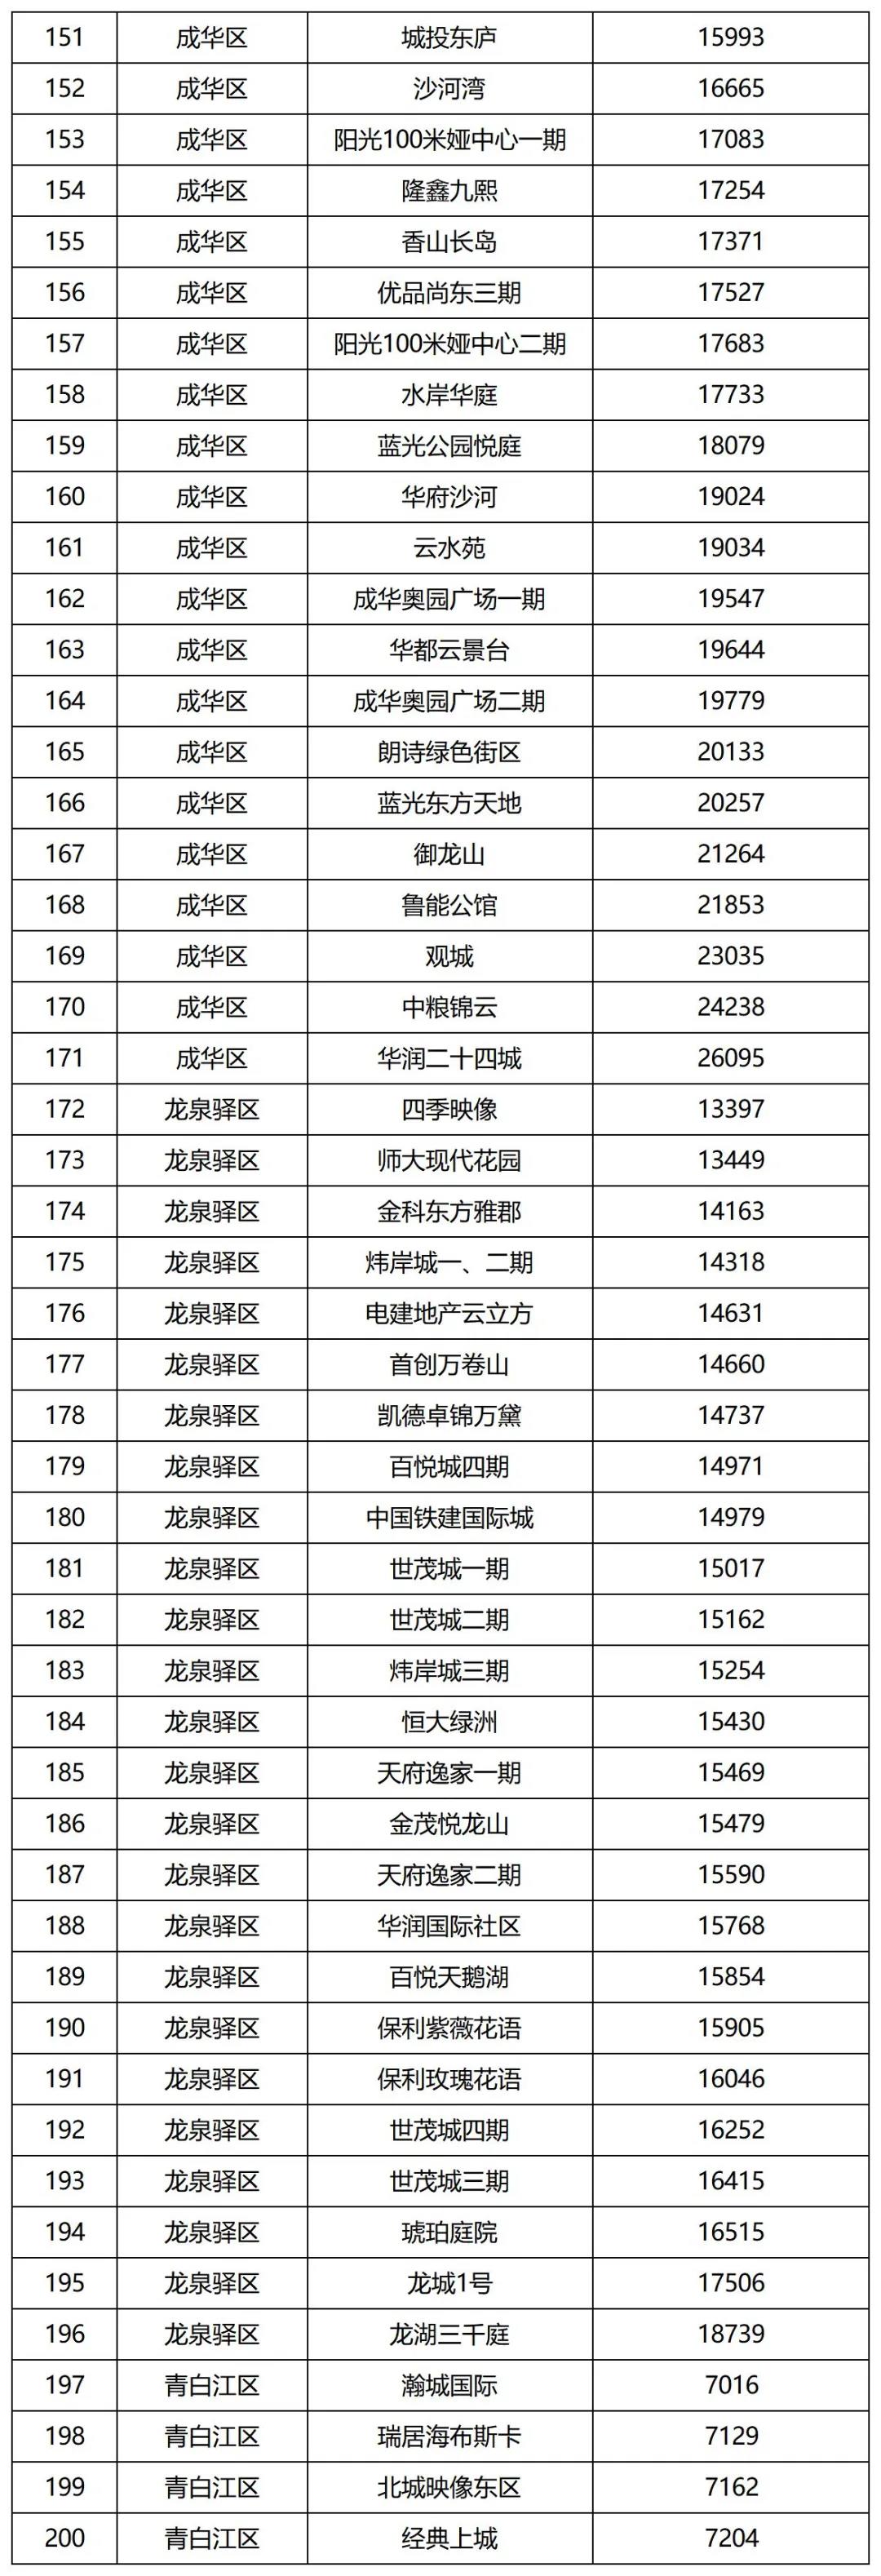 成都发布第二批住宅小区二手房成交参考价 涉及286个小区中国网地产